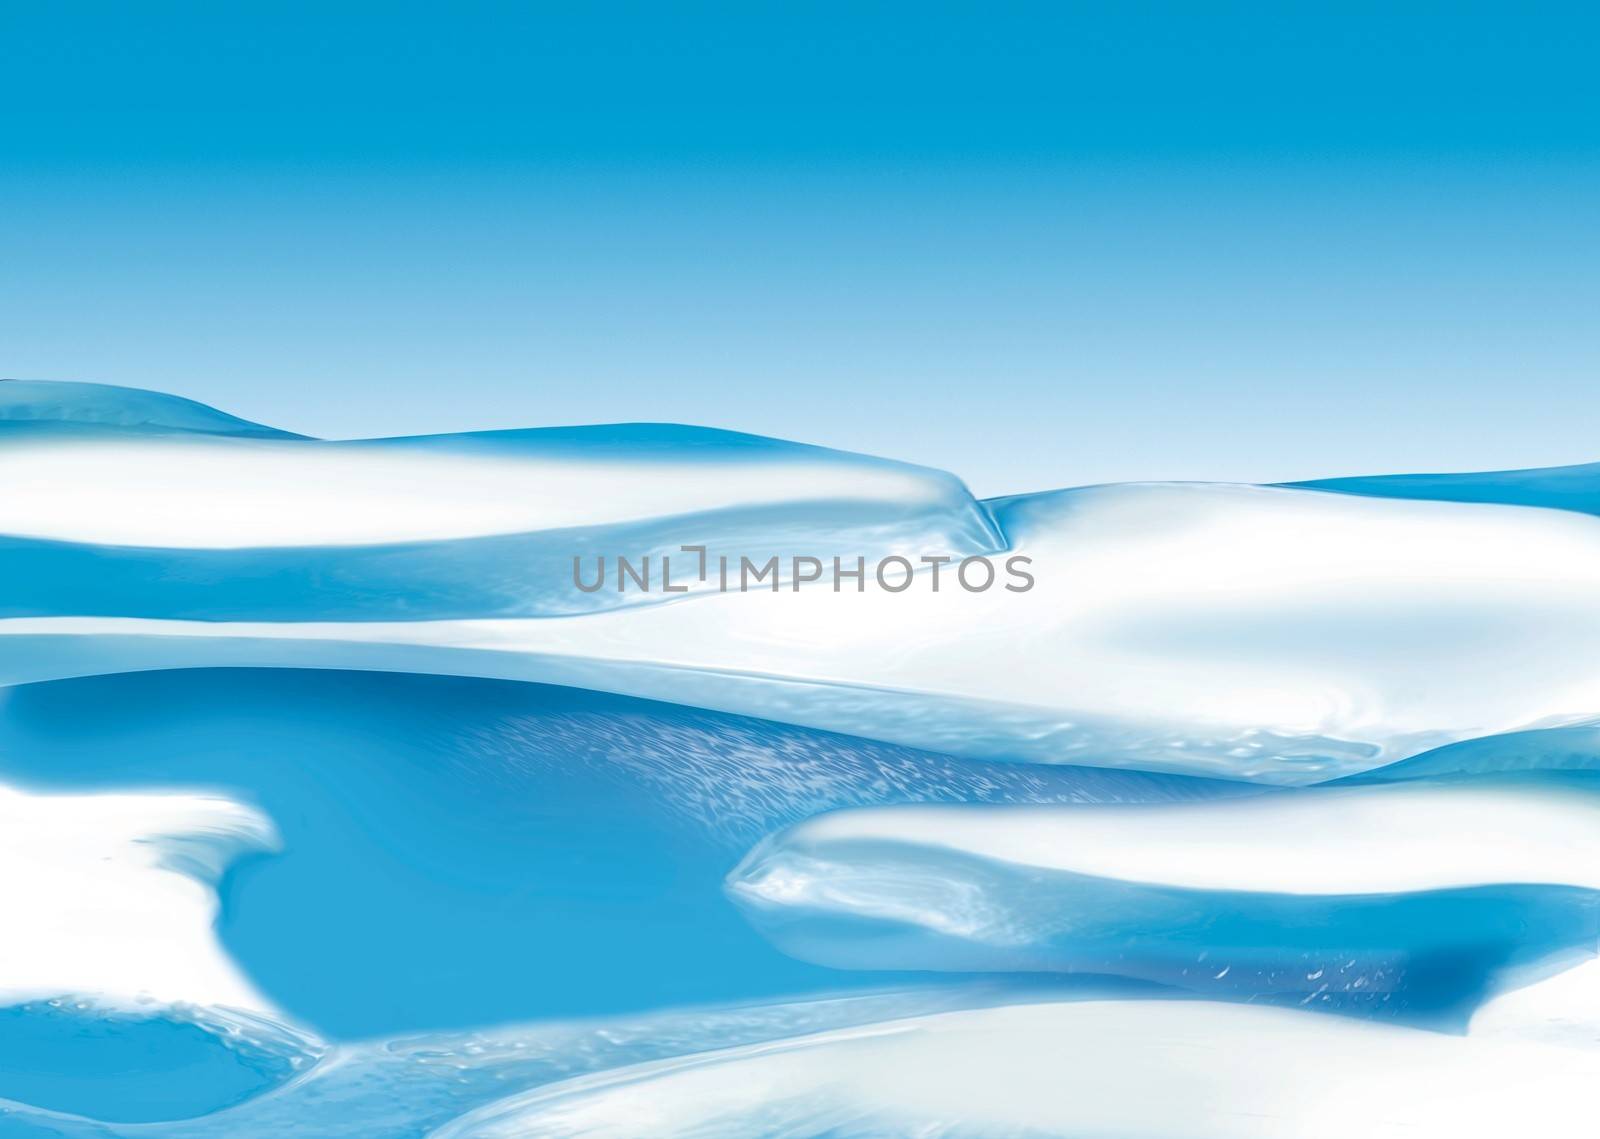 Ice Floe - Background Illustration